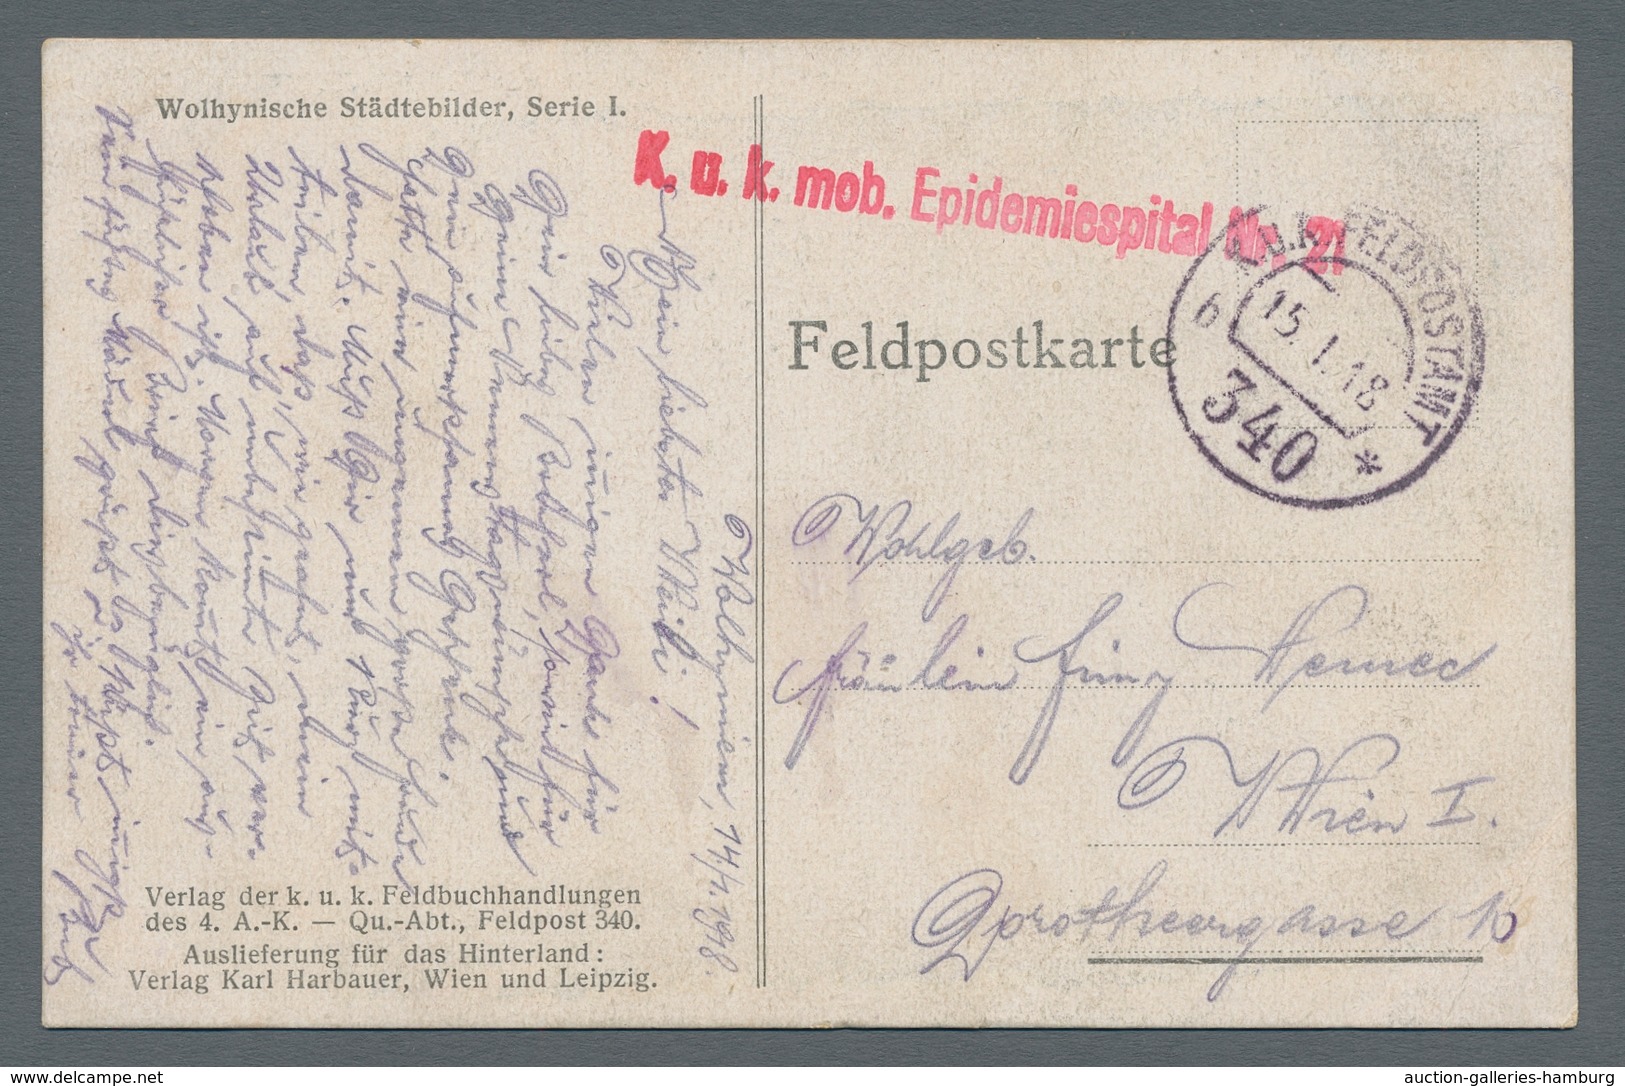 Österreich - Militärpost / Feldpost: 1915-1918, interessante Partie von neun österreichischen Feldpo